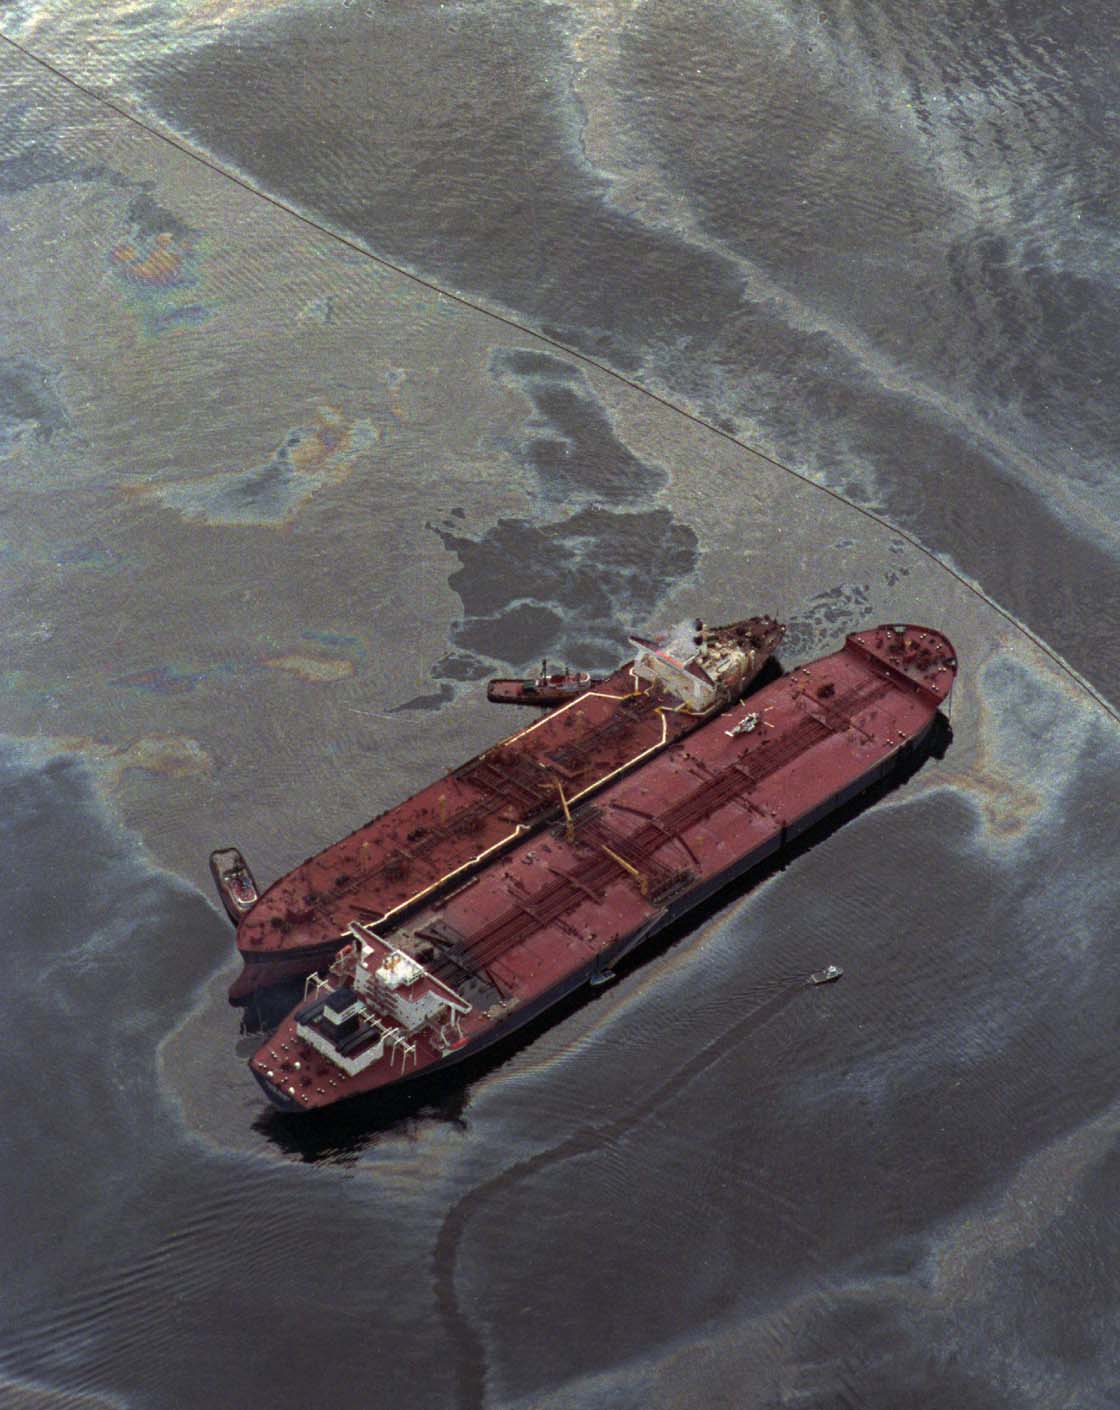 Offshore oil spill equipment obsolete: audit - image